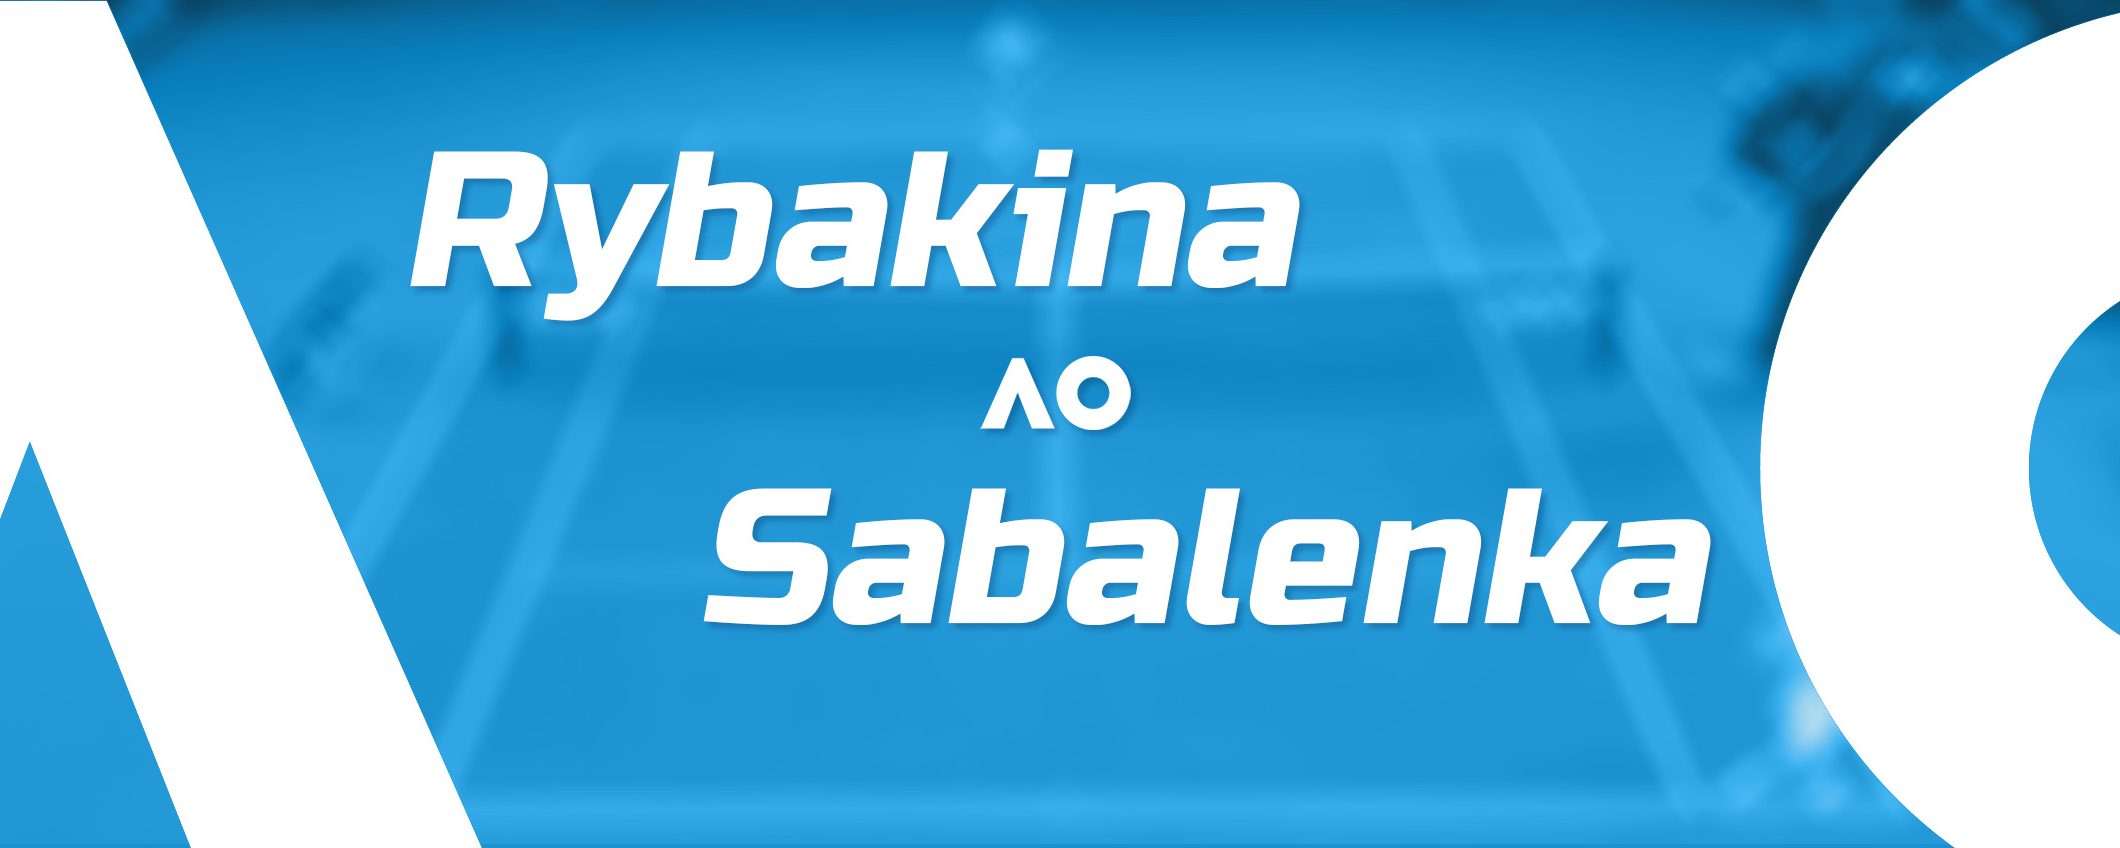 Rybakina-Sabalenka: finale Australian Open in streaming